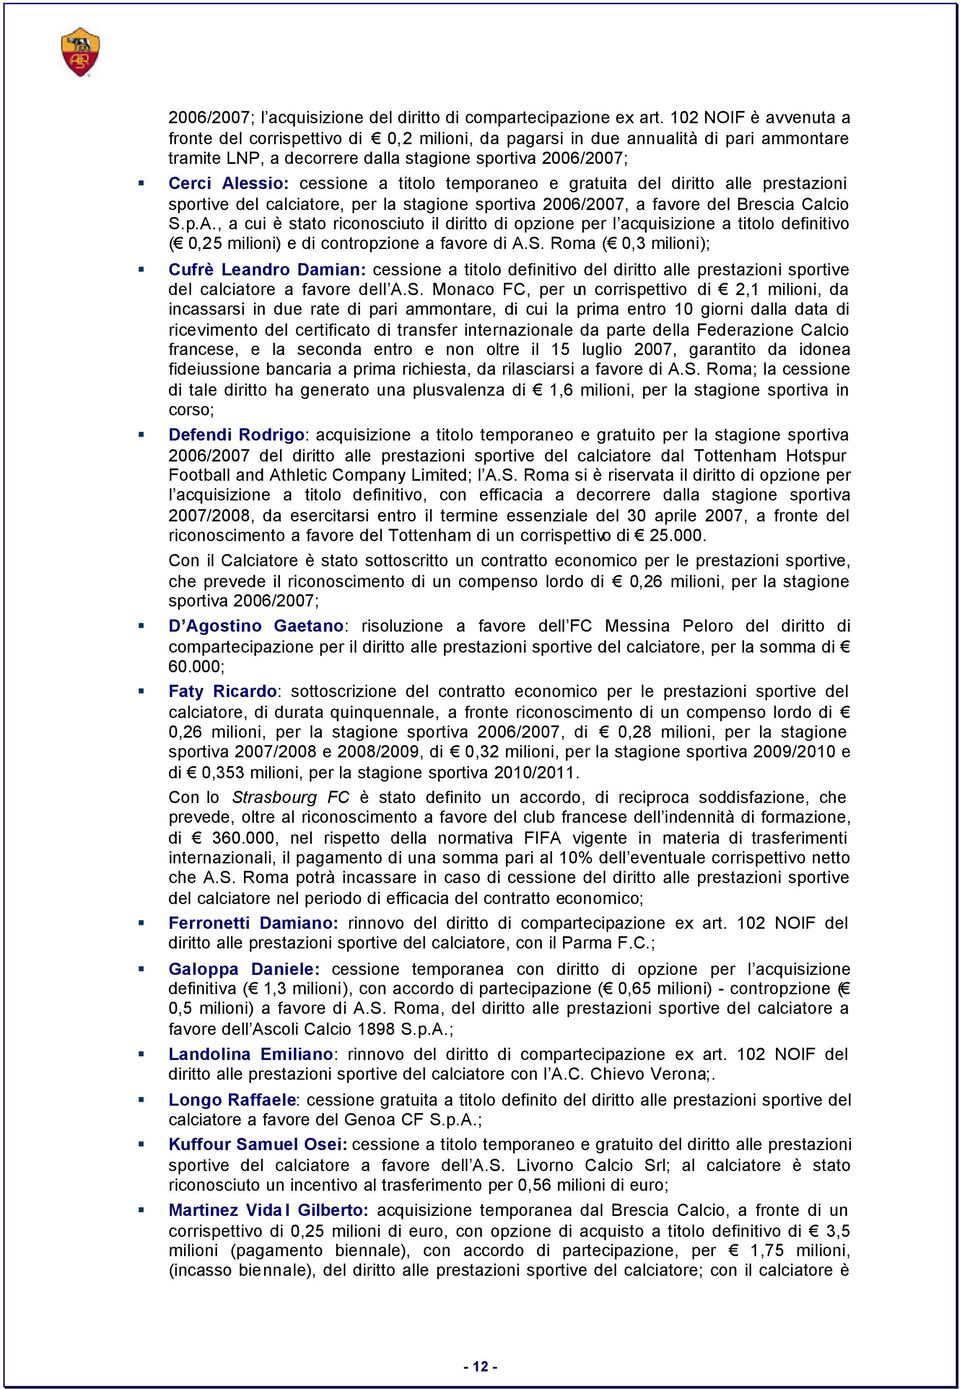 titolo temporaneo e gratuita del diritto alle prestazioni sportive del calciatore, per la stagione sportiva 2006/2007, a favore del Brescia Calcio S.p.A.